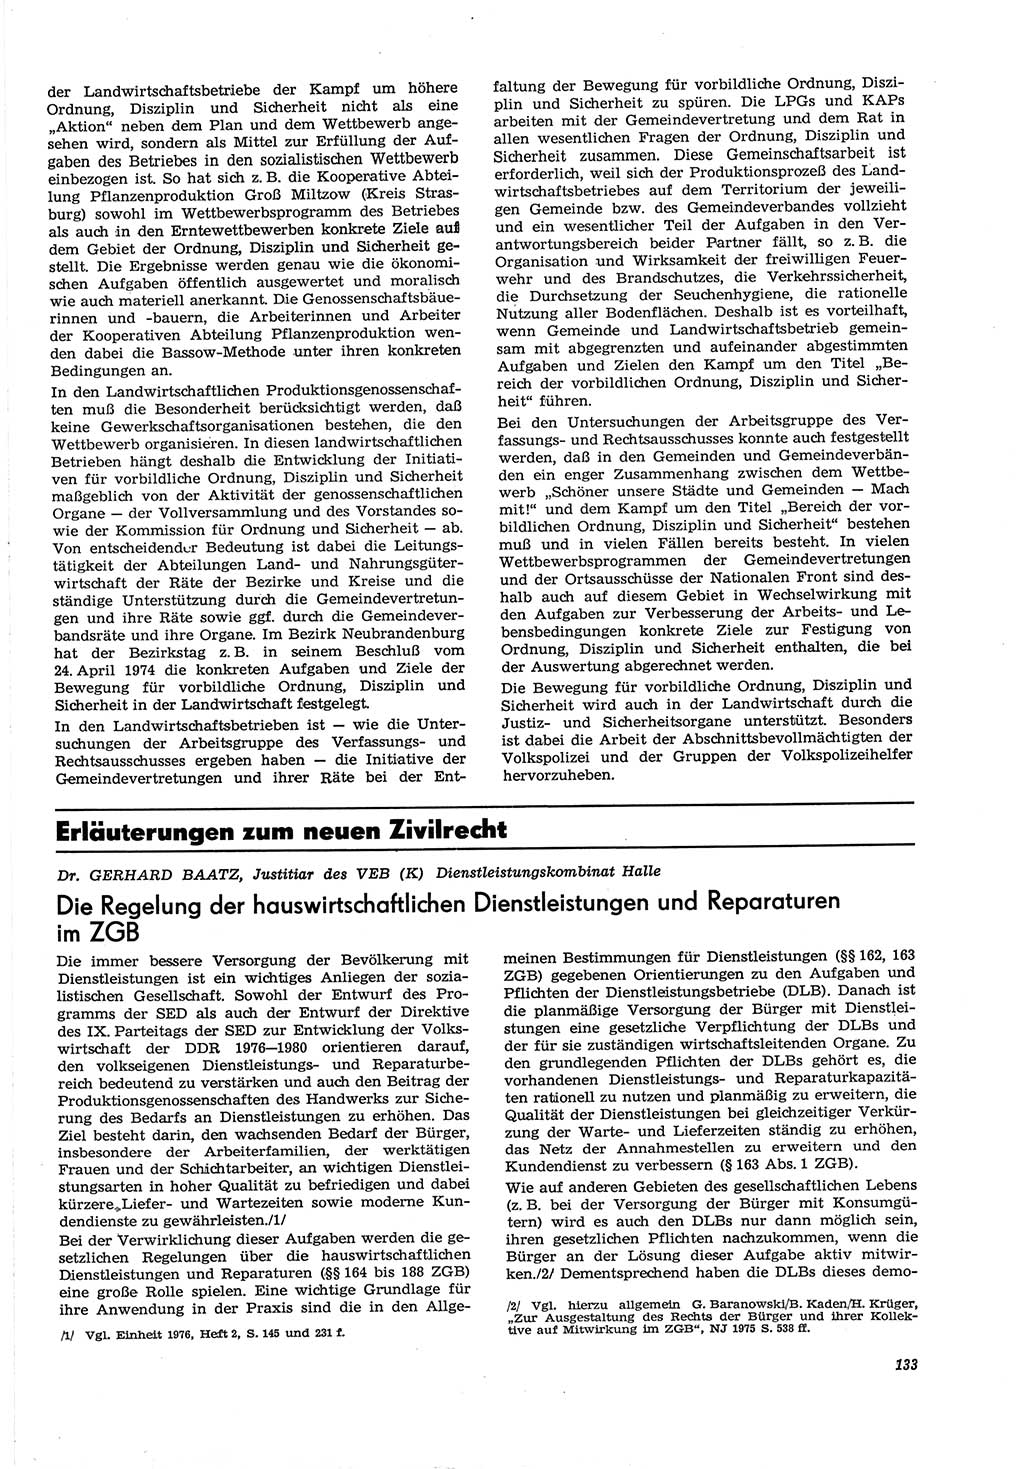 Neue Justiz (NJ), Zeitschrift für Recht und Rechtswissenschaft [Deutsche Demokratische Republik (DDR)], 30. Jahrgang 1976, Seite 133 (NJ DDR 1976, S. 133)